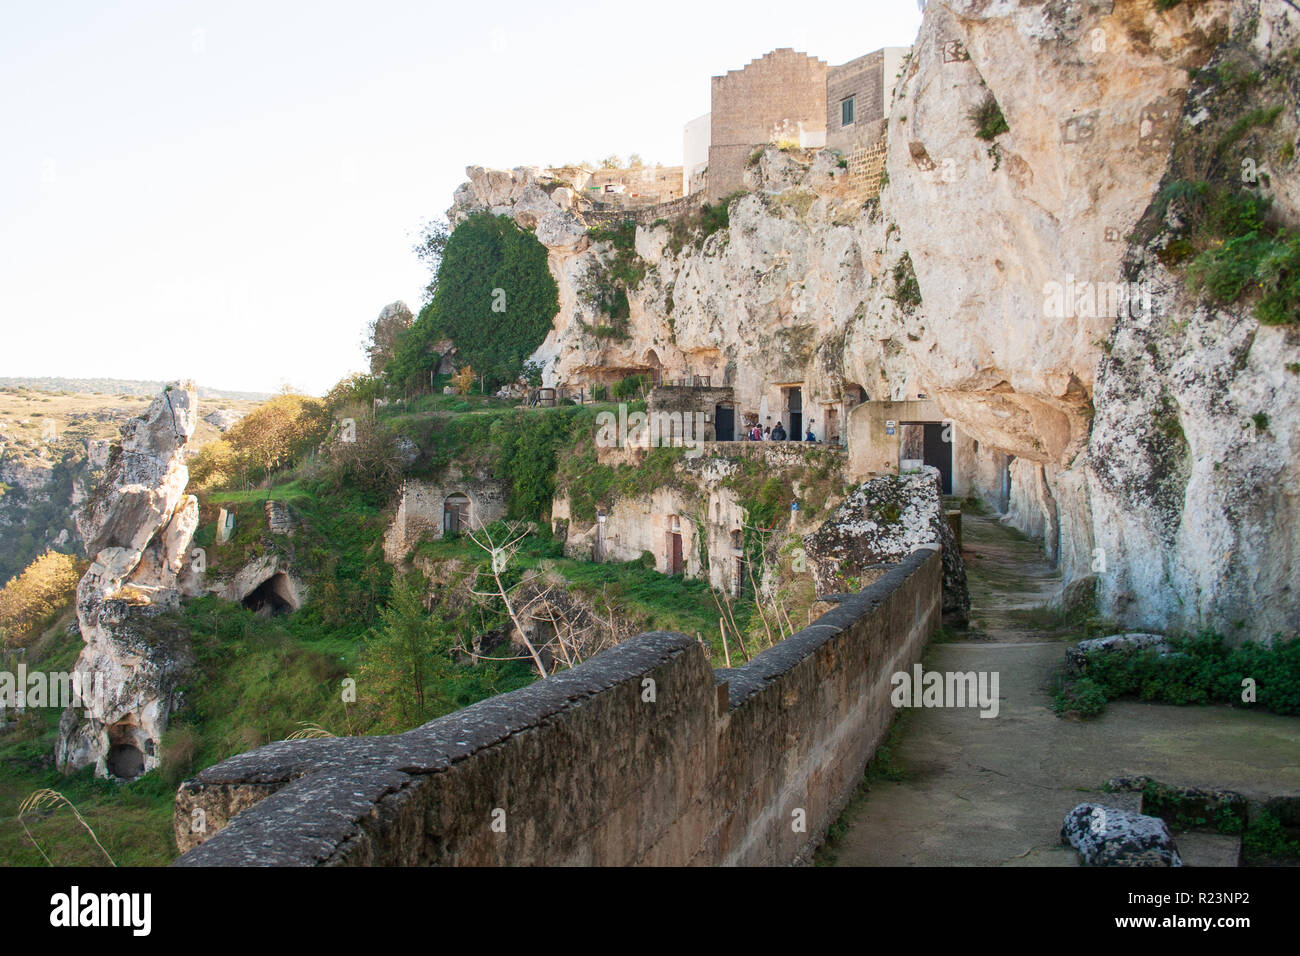 Grotte di sassi o pietre di Matera capitale europea della cultura 2019, la Basilicata, Italia Foto Stock